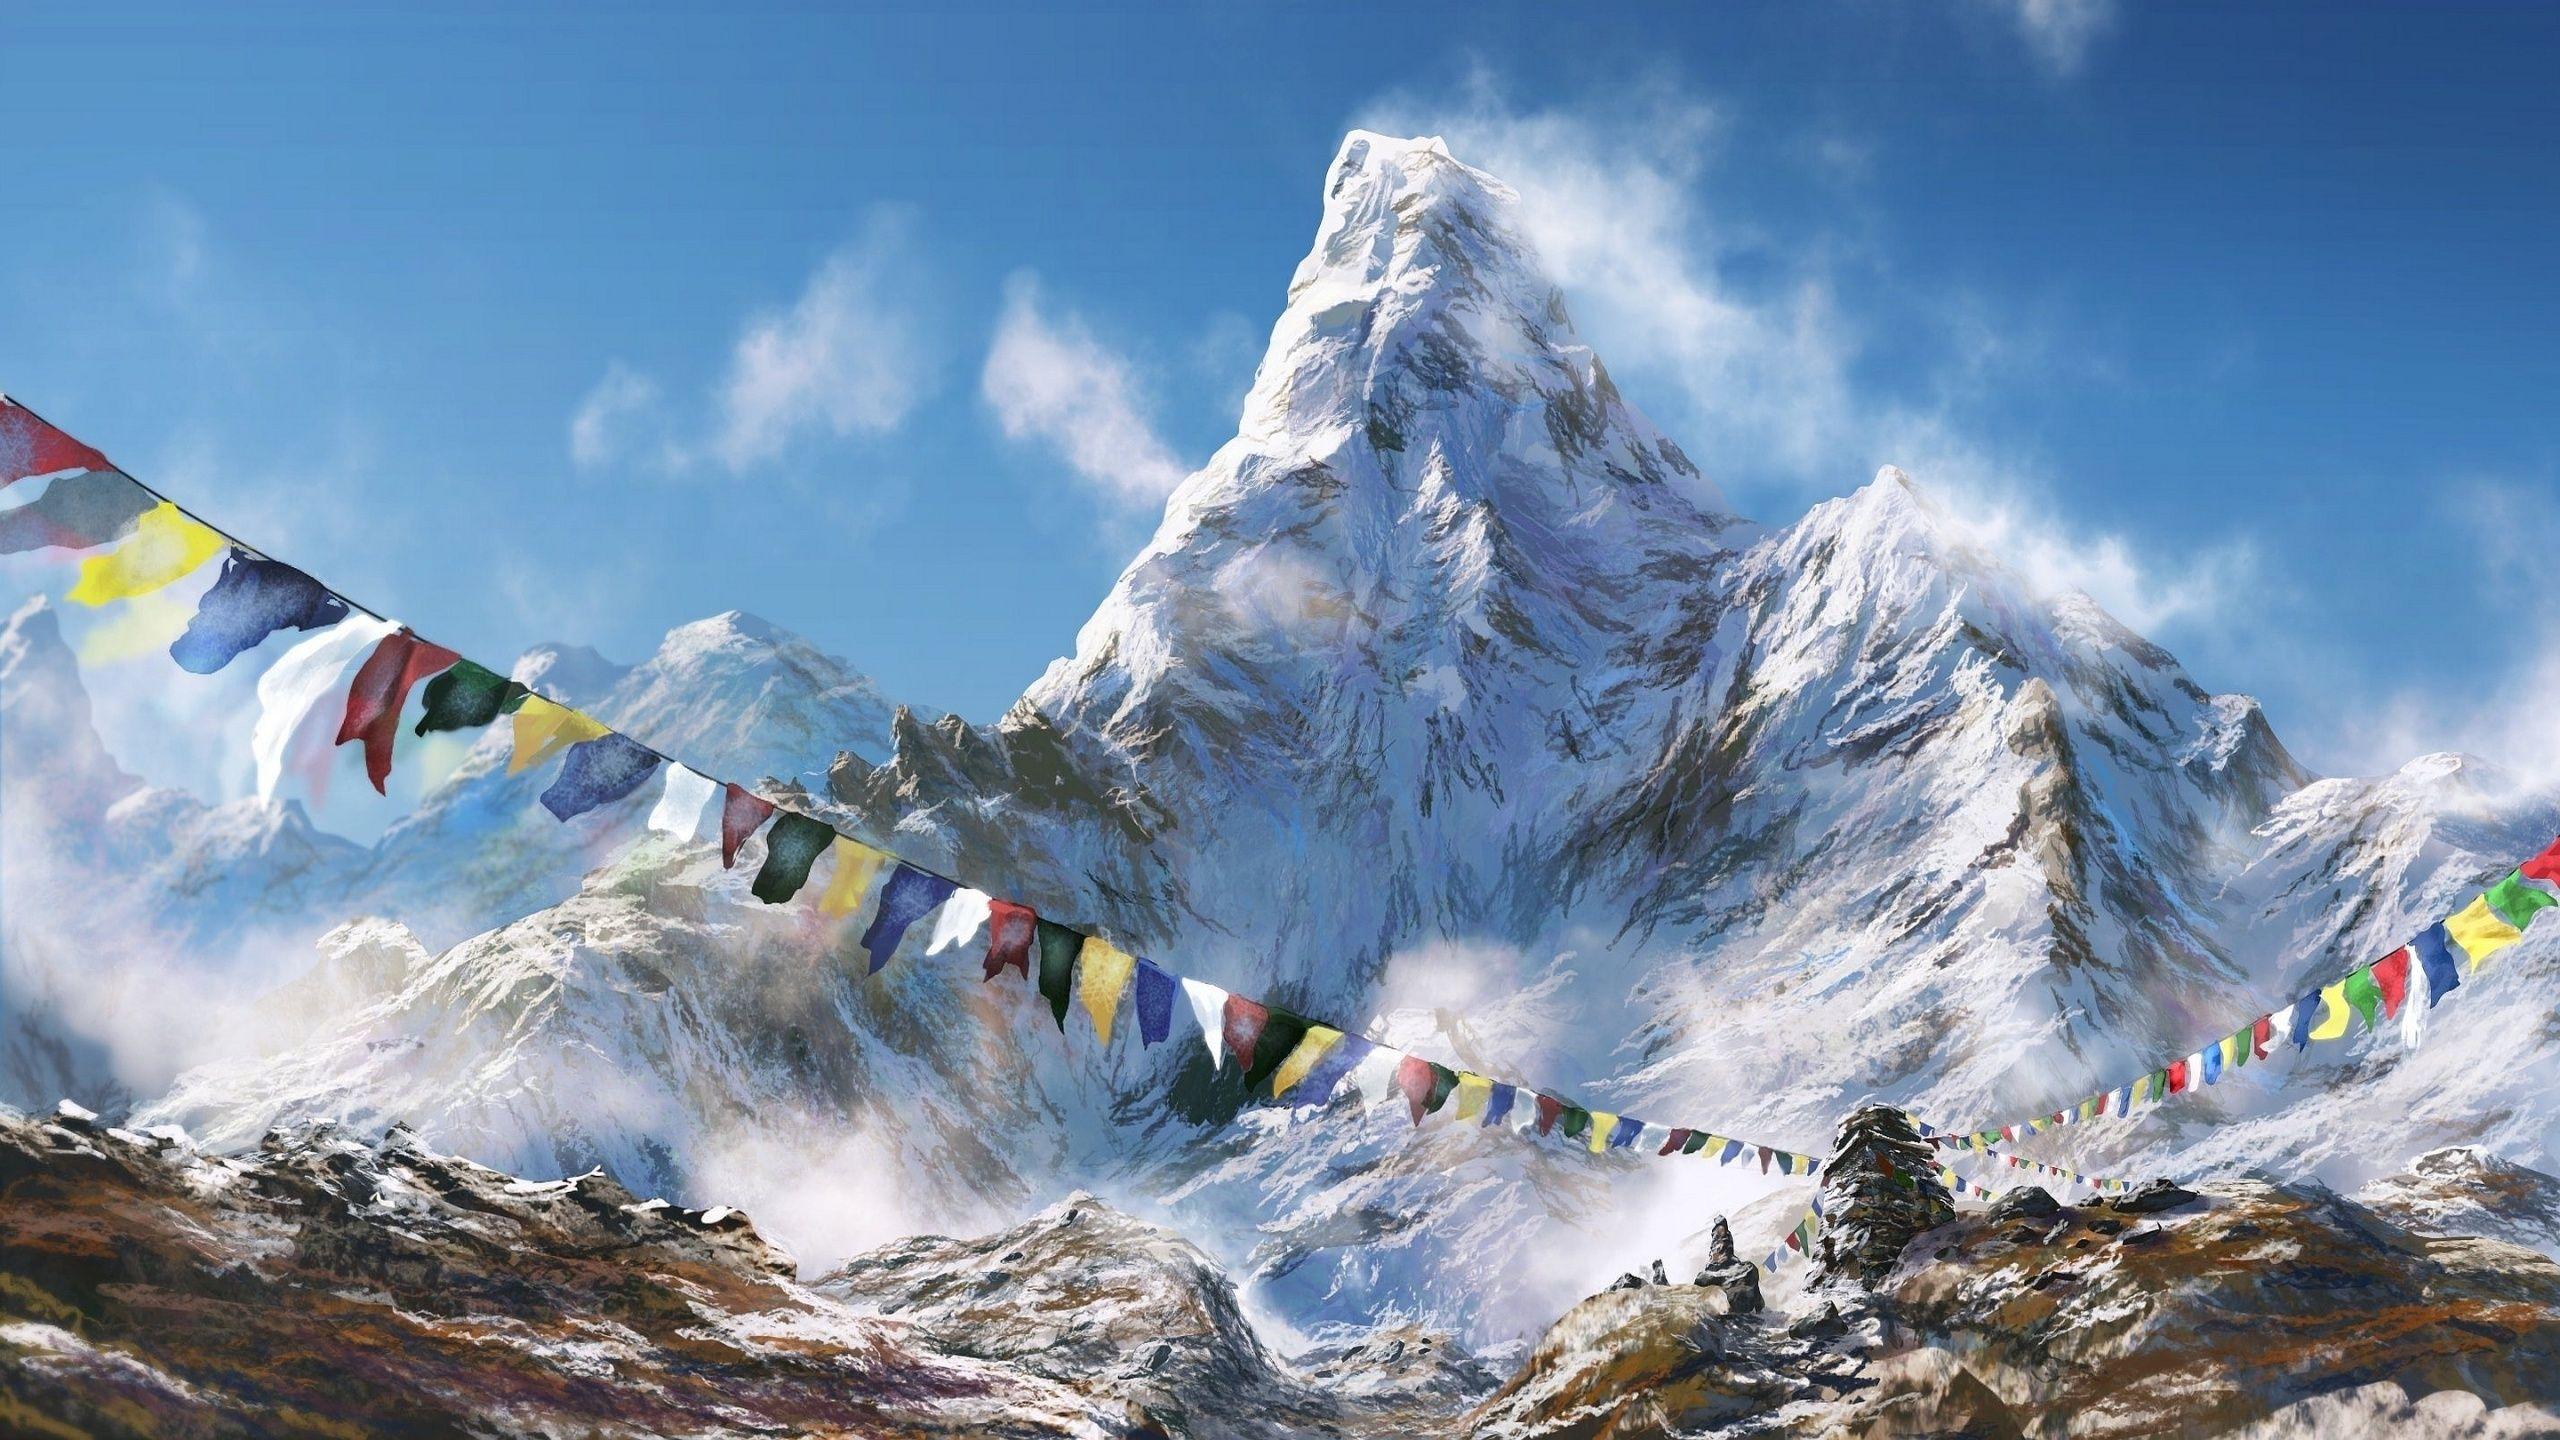 Himalayas: Thử sức với trải nghiệm khám phá vùng núi Himalayas hoang sơ và hoành tráng với những hình ảnh đẹp tuyệt vời! Cảm nhận sự độc đáo của các địa điểm nổi tiếng, những cảnh quan đẹp mắt và nét đẹp của văn hoá địa phương. Hãy cùng khám phá thế giới hoang dã này một cách chân thật nhất!